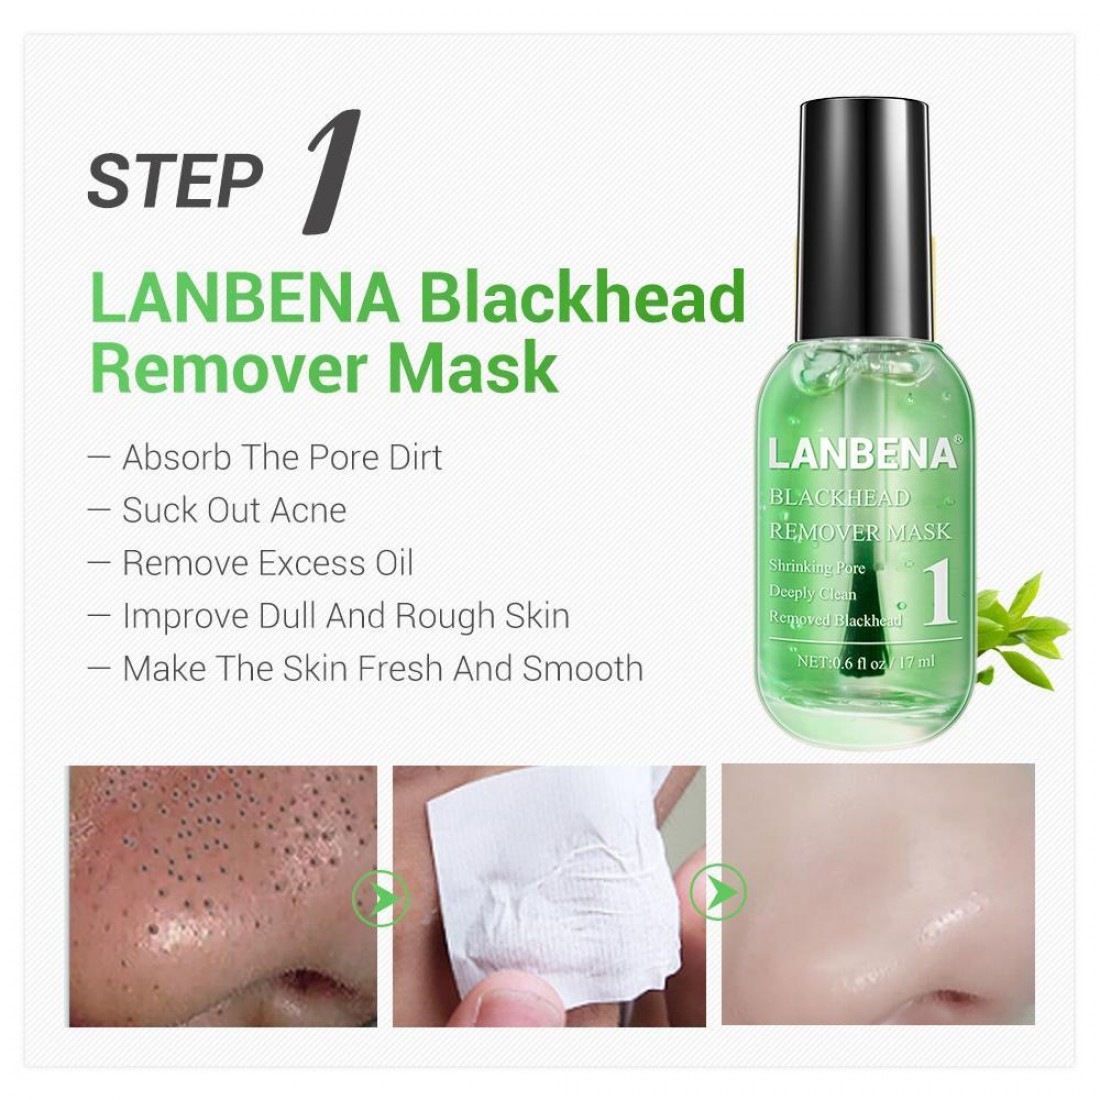 Lanbena blackhead remover инструкция. Маска LANBENA Blackhead Remover. Маска Blackhead Remover Mask. LANBENA комбинированный набор для очистки пор. Ланбена сыворотка для лица.